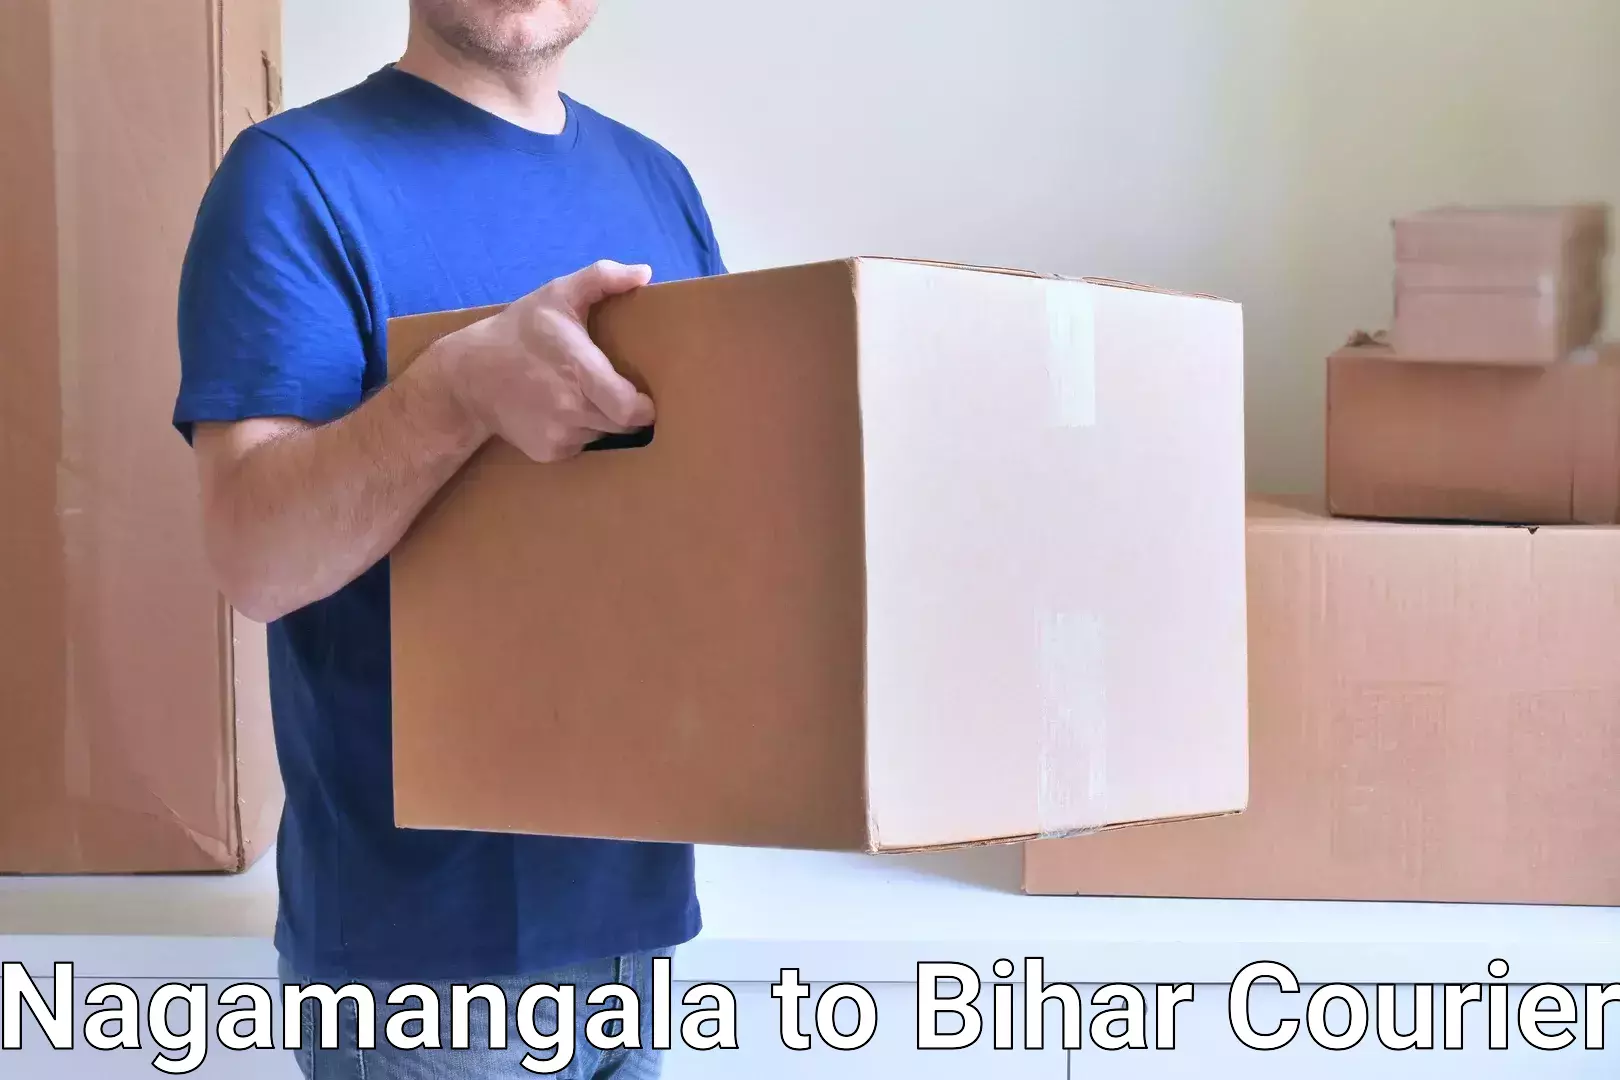 Cargo courier service Nagamangala to Bhorey